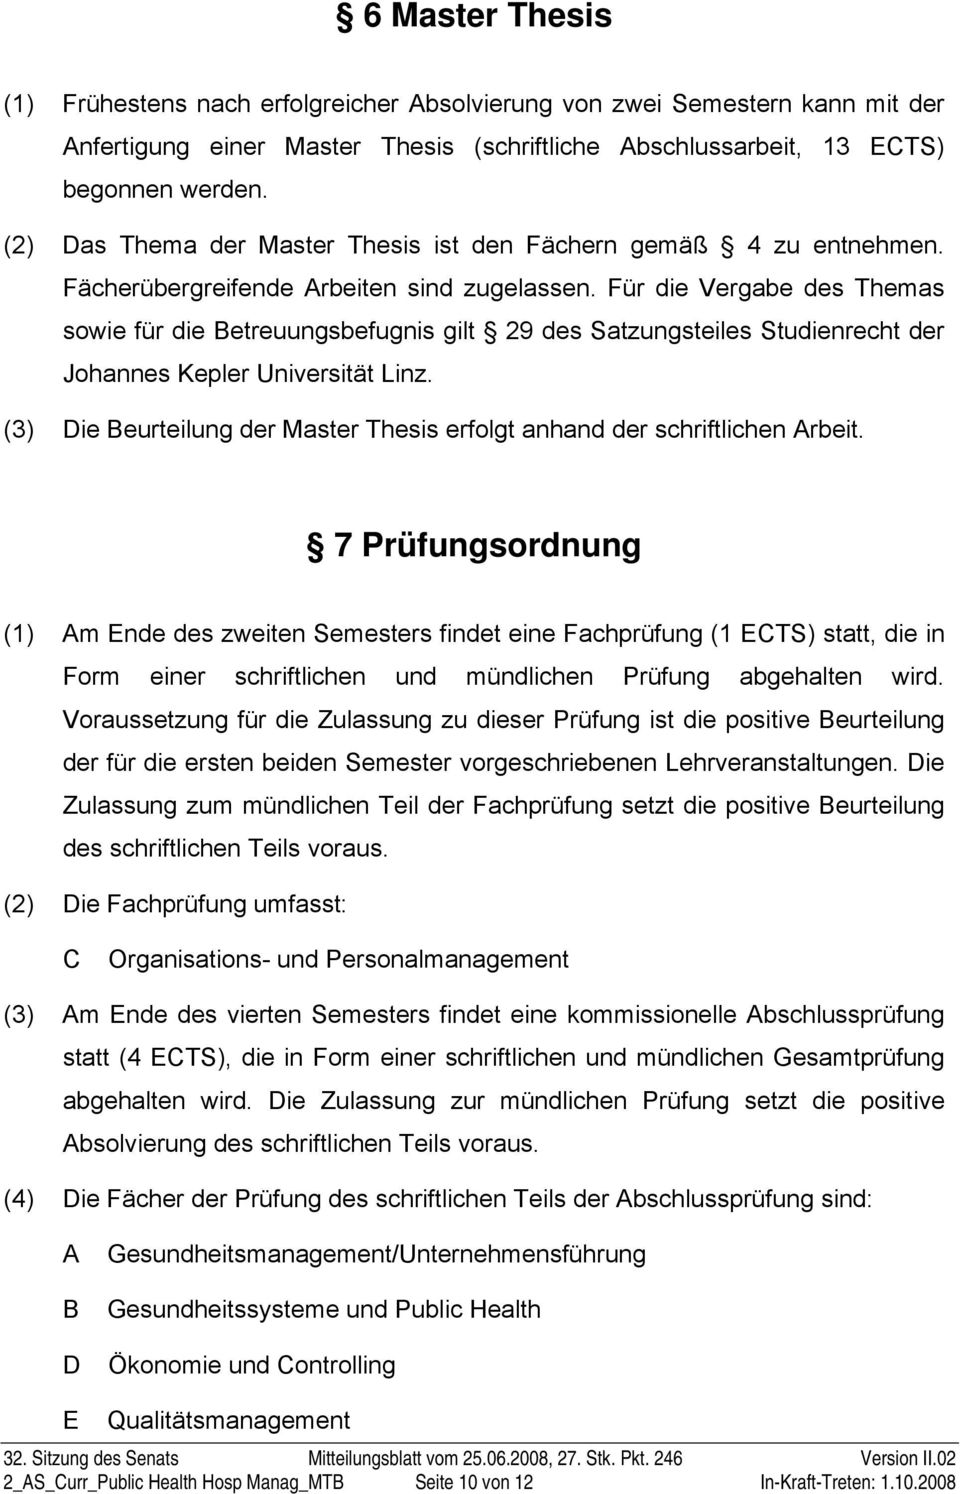 Für die Vergabe des Themas sowie für die Betreuungsbefugnis gilt 29 des Satzungsteiles Studienrecht der Johannes Kepler Universität Linz.